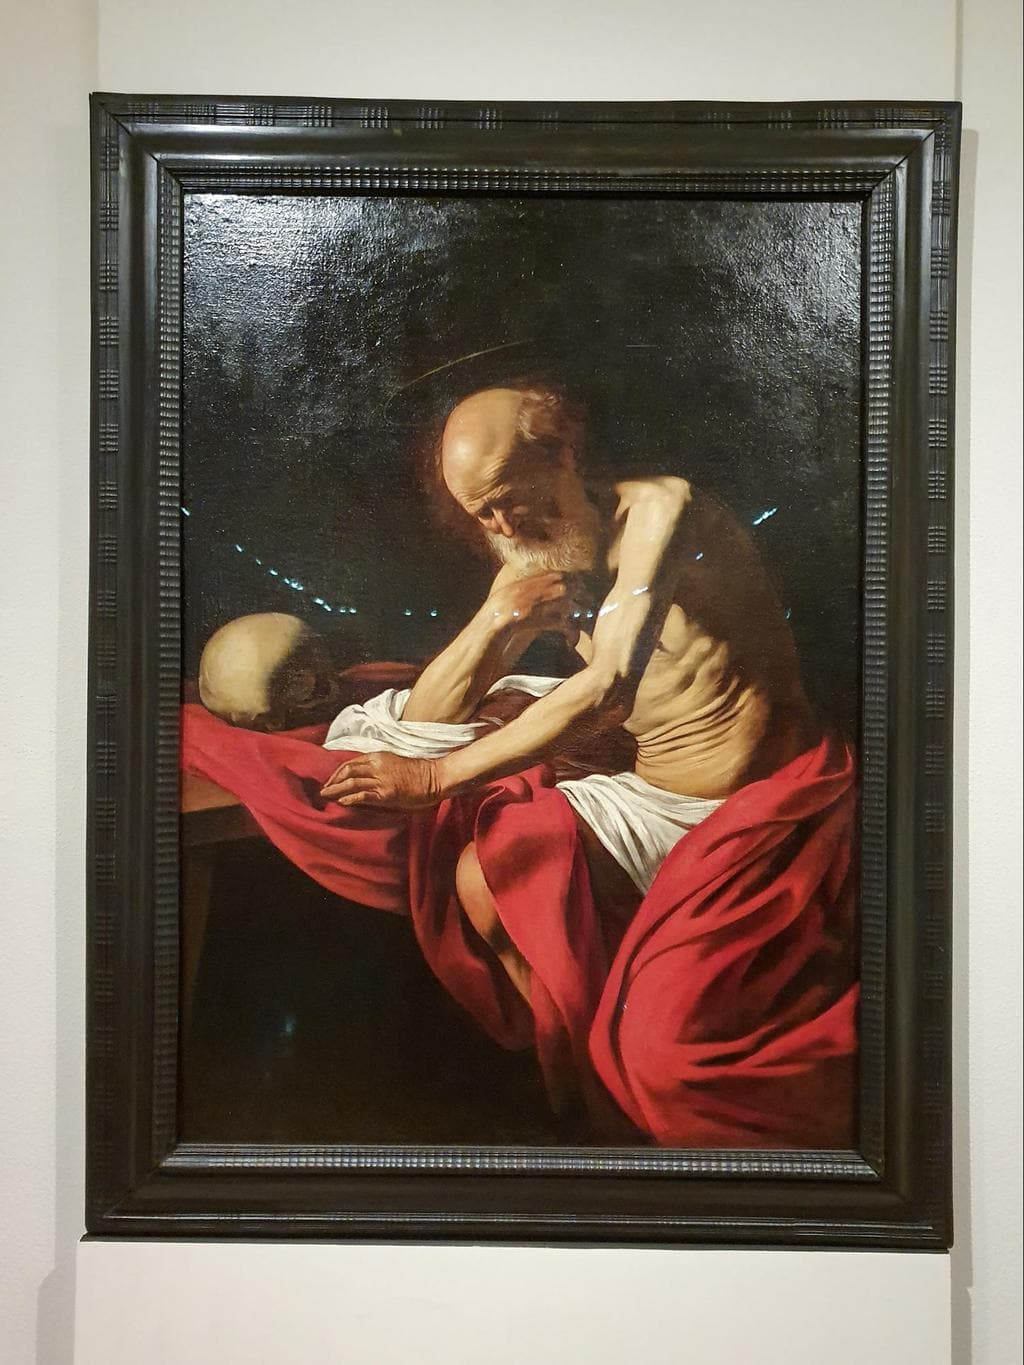 Caravaggio’s painting at Montserrat Museum